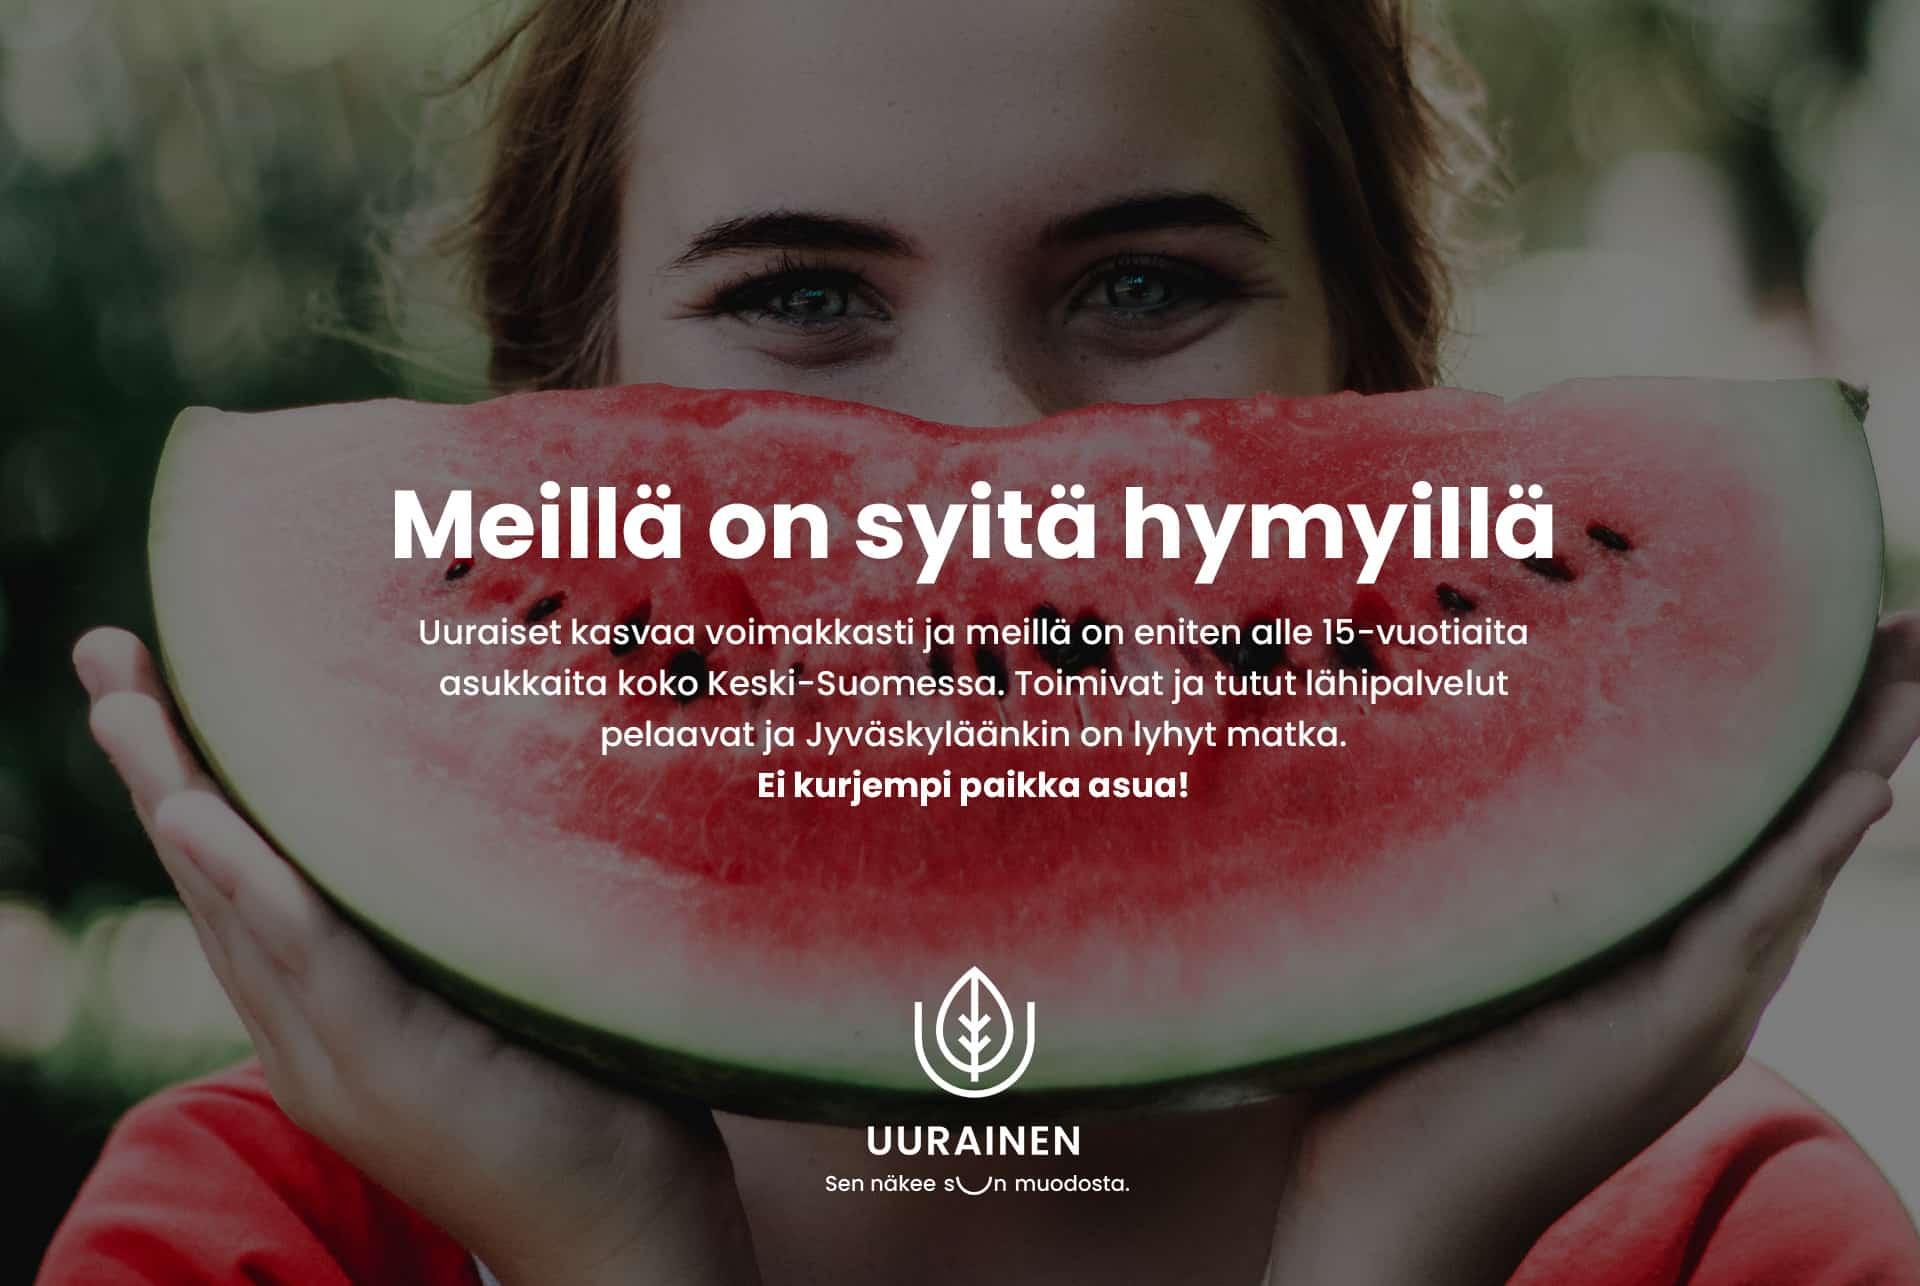 Uuraisten kunnan mainos, jossa ihminen pitelee halkaistua vesimelonia kasvojensa edessä kuin hymyilevää suuta.